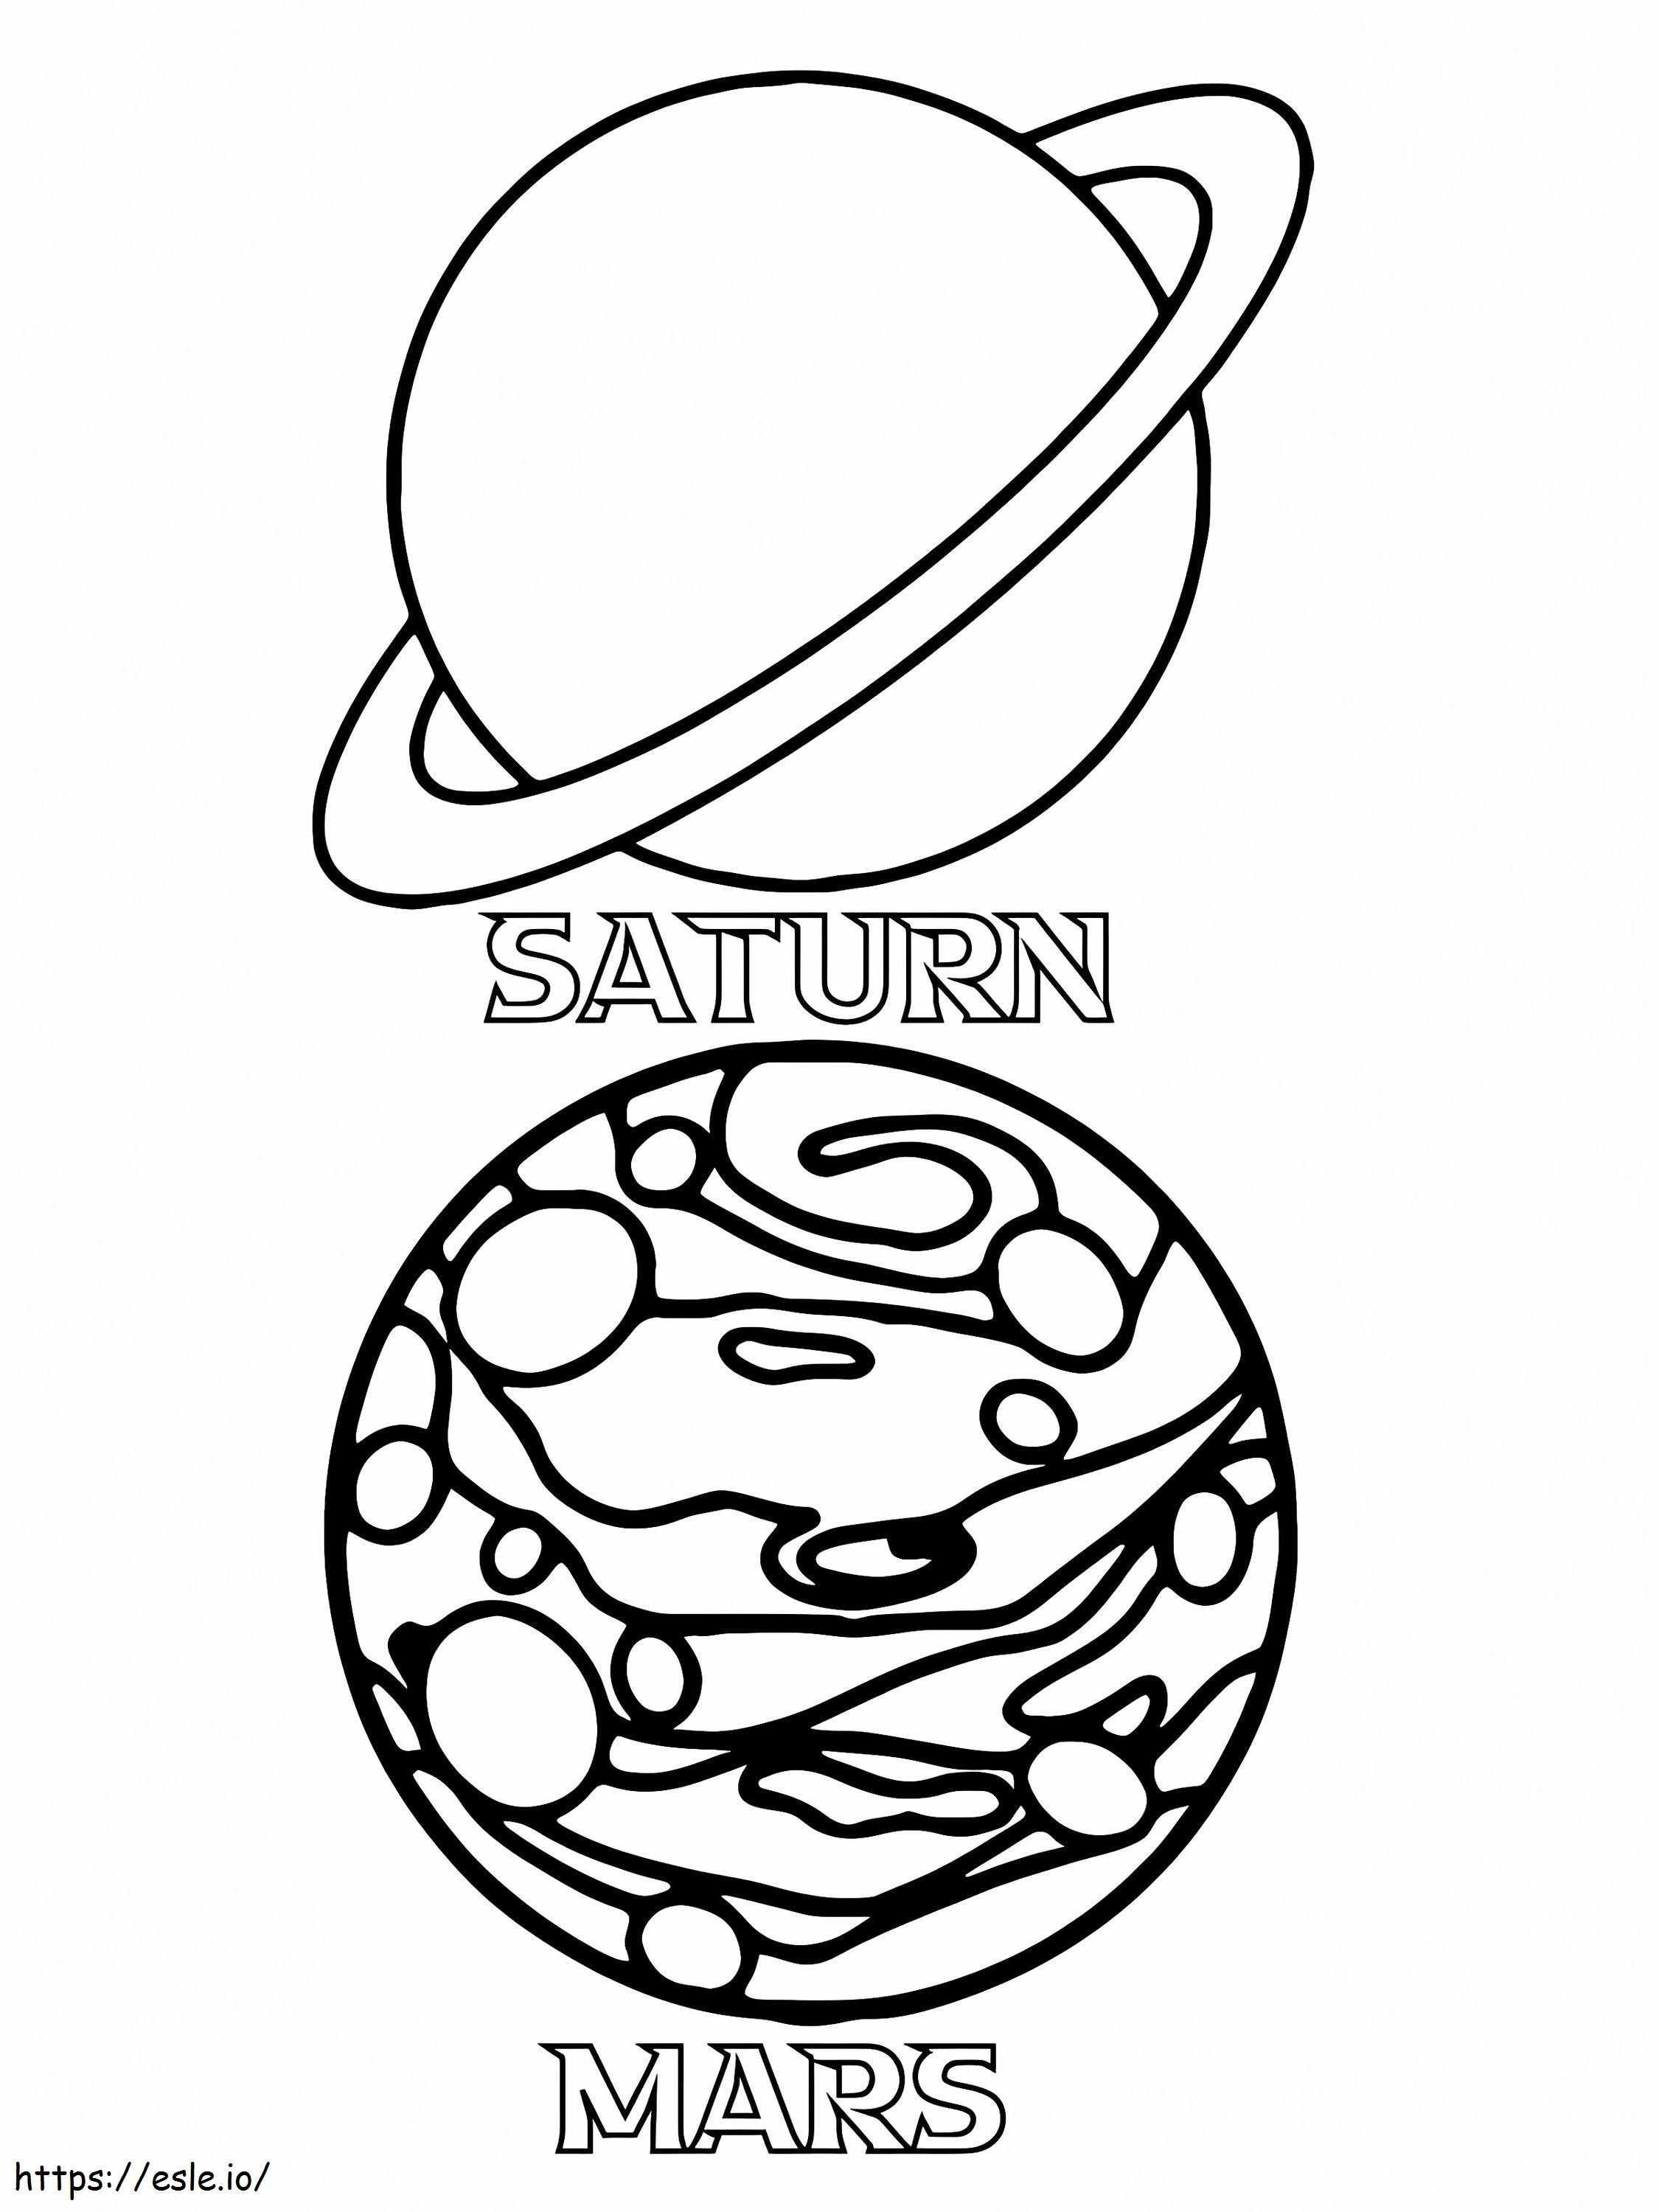 Coloriage Saturne et Mars à imprimer dessin